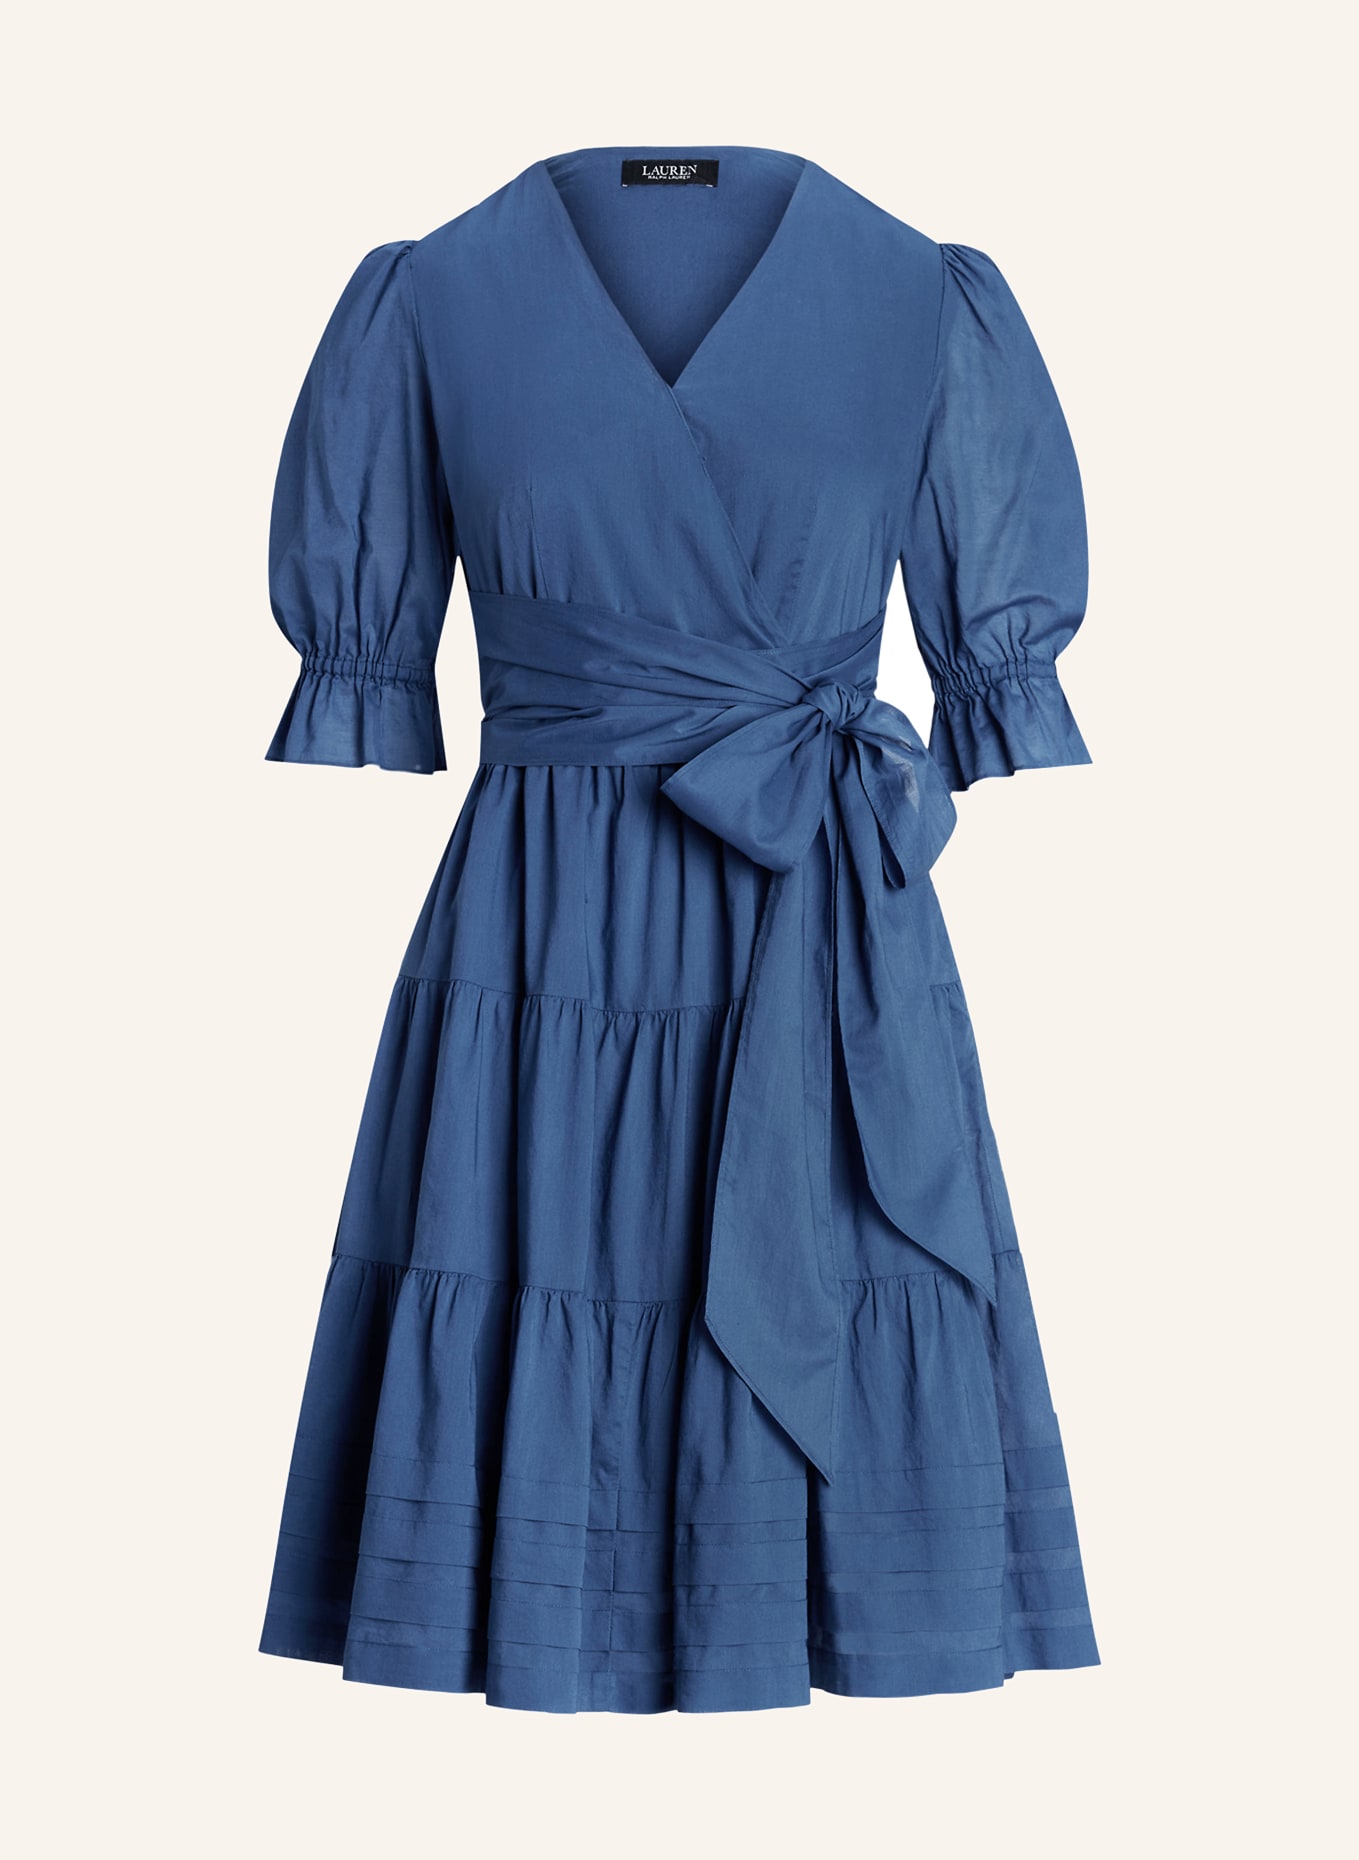 LAUREN RALPH LAUREN Dress in wrap look, Color: BLUE (Image 1)